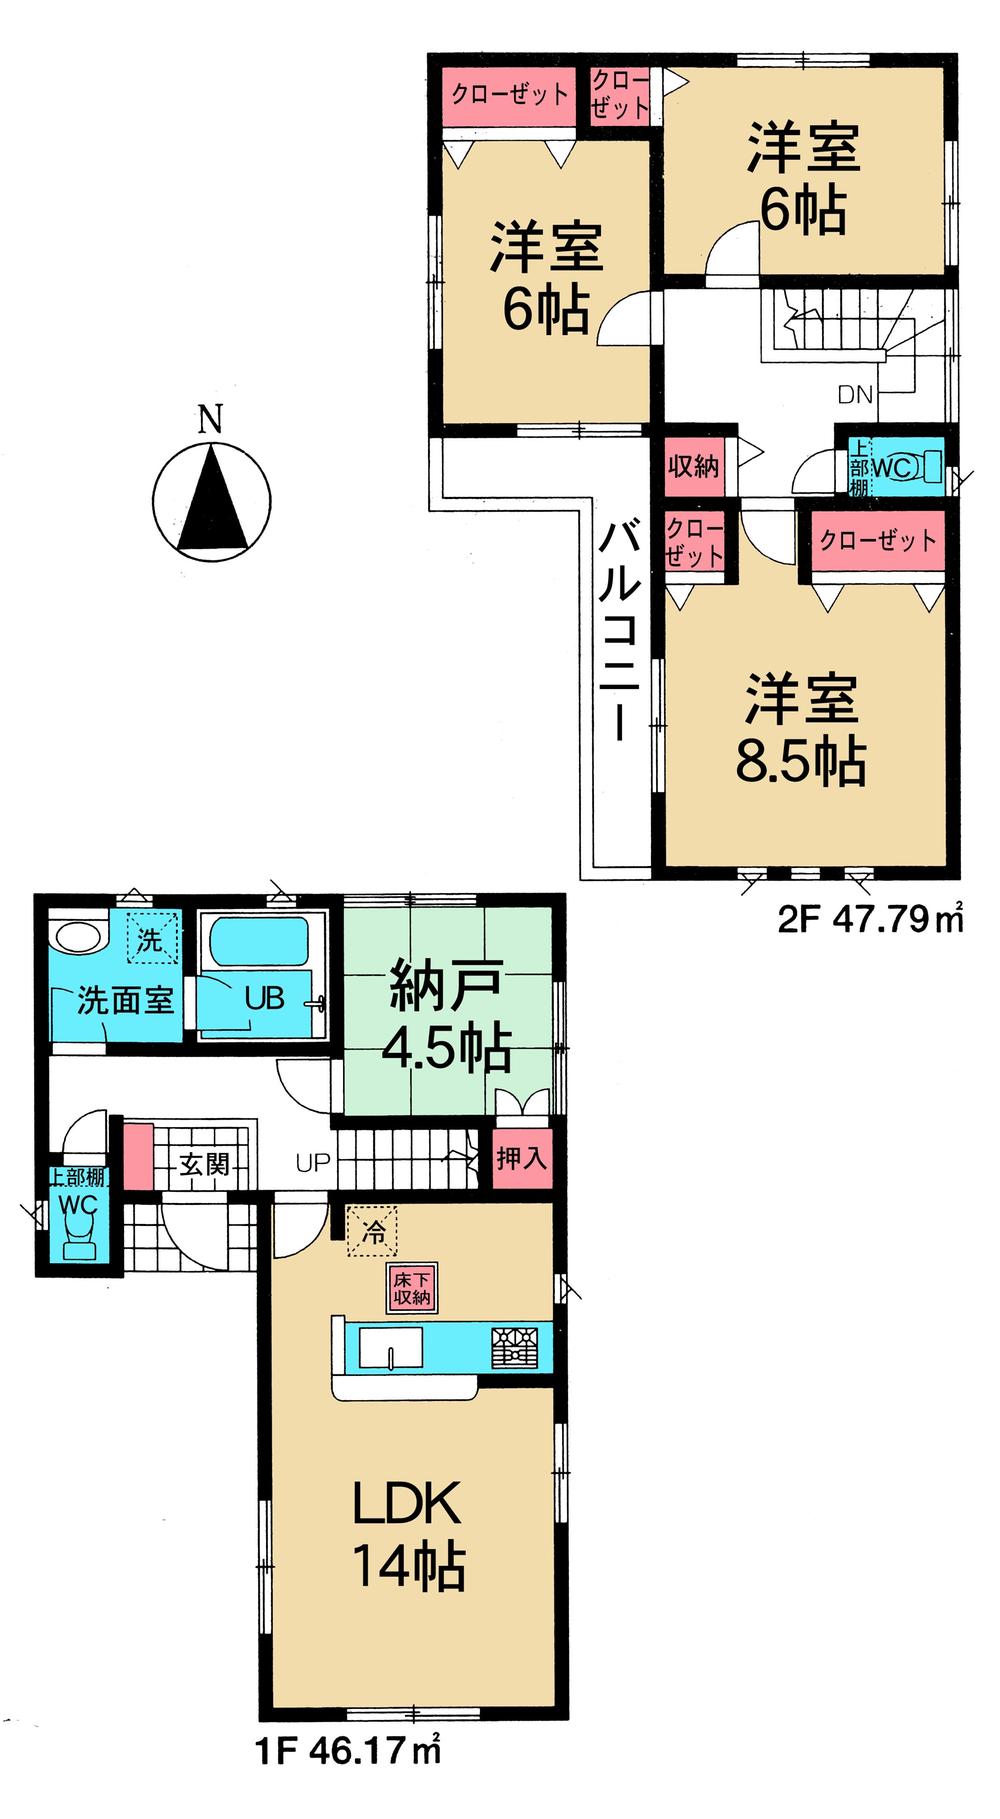 Floor plan. 32,800,000 yen, 3LDK + S (storeroom), Land area 106.54 sq m , Building area 93.96 sq m